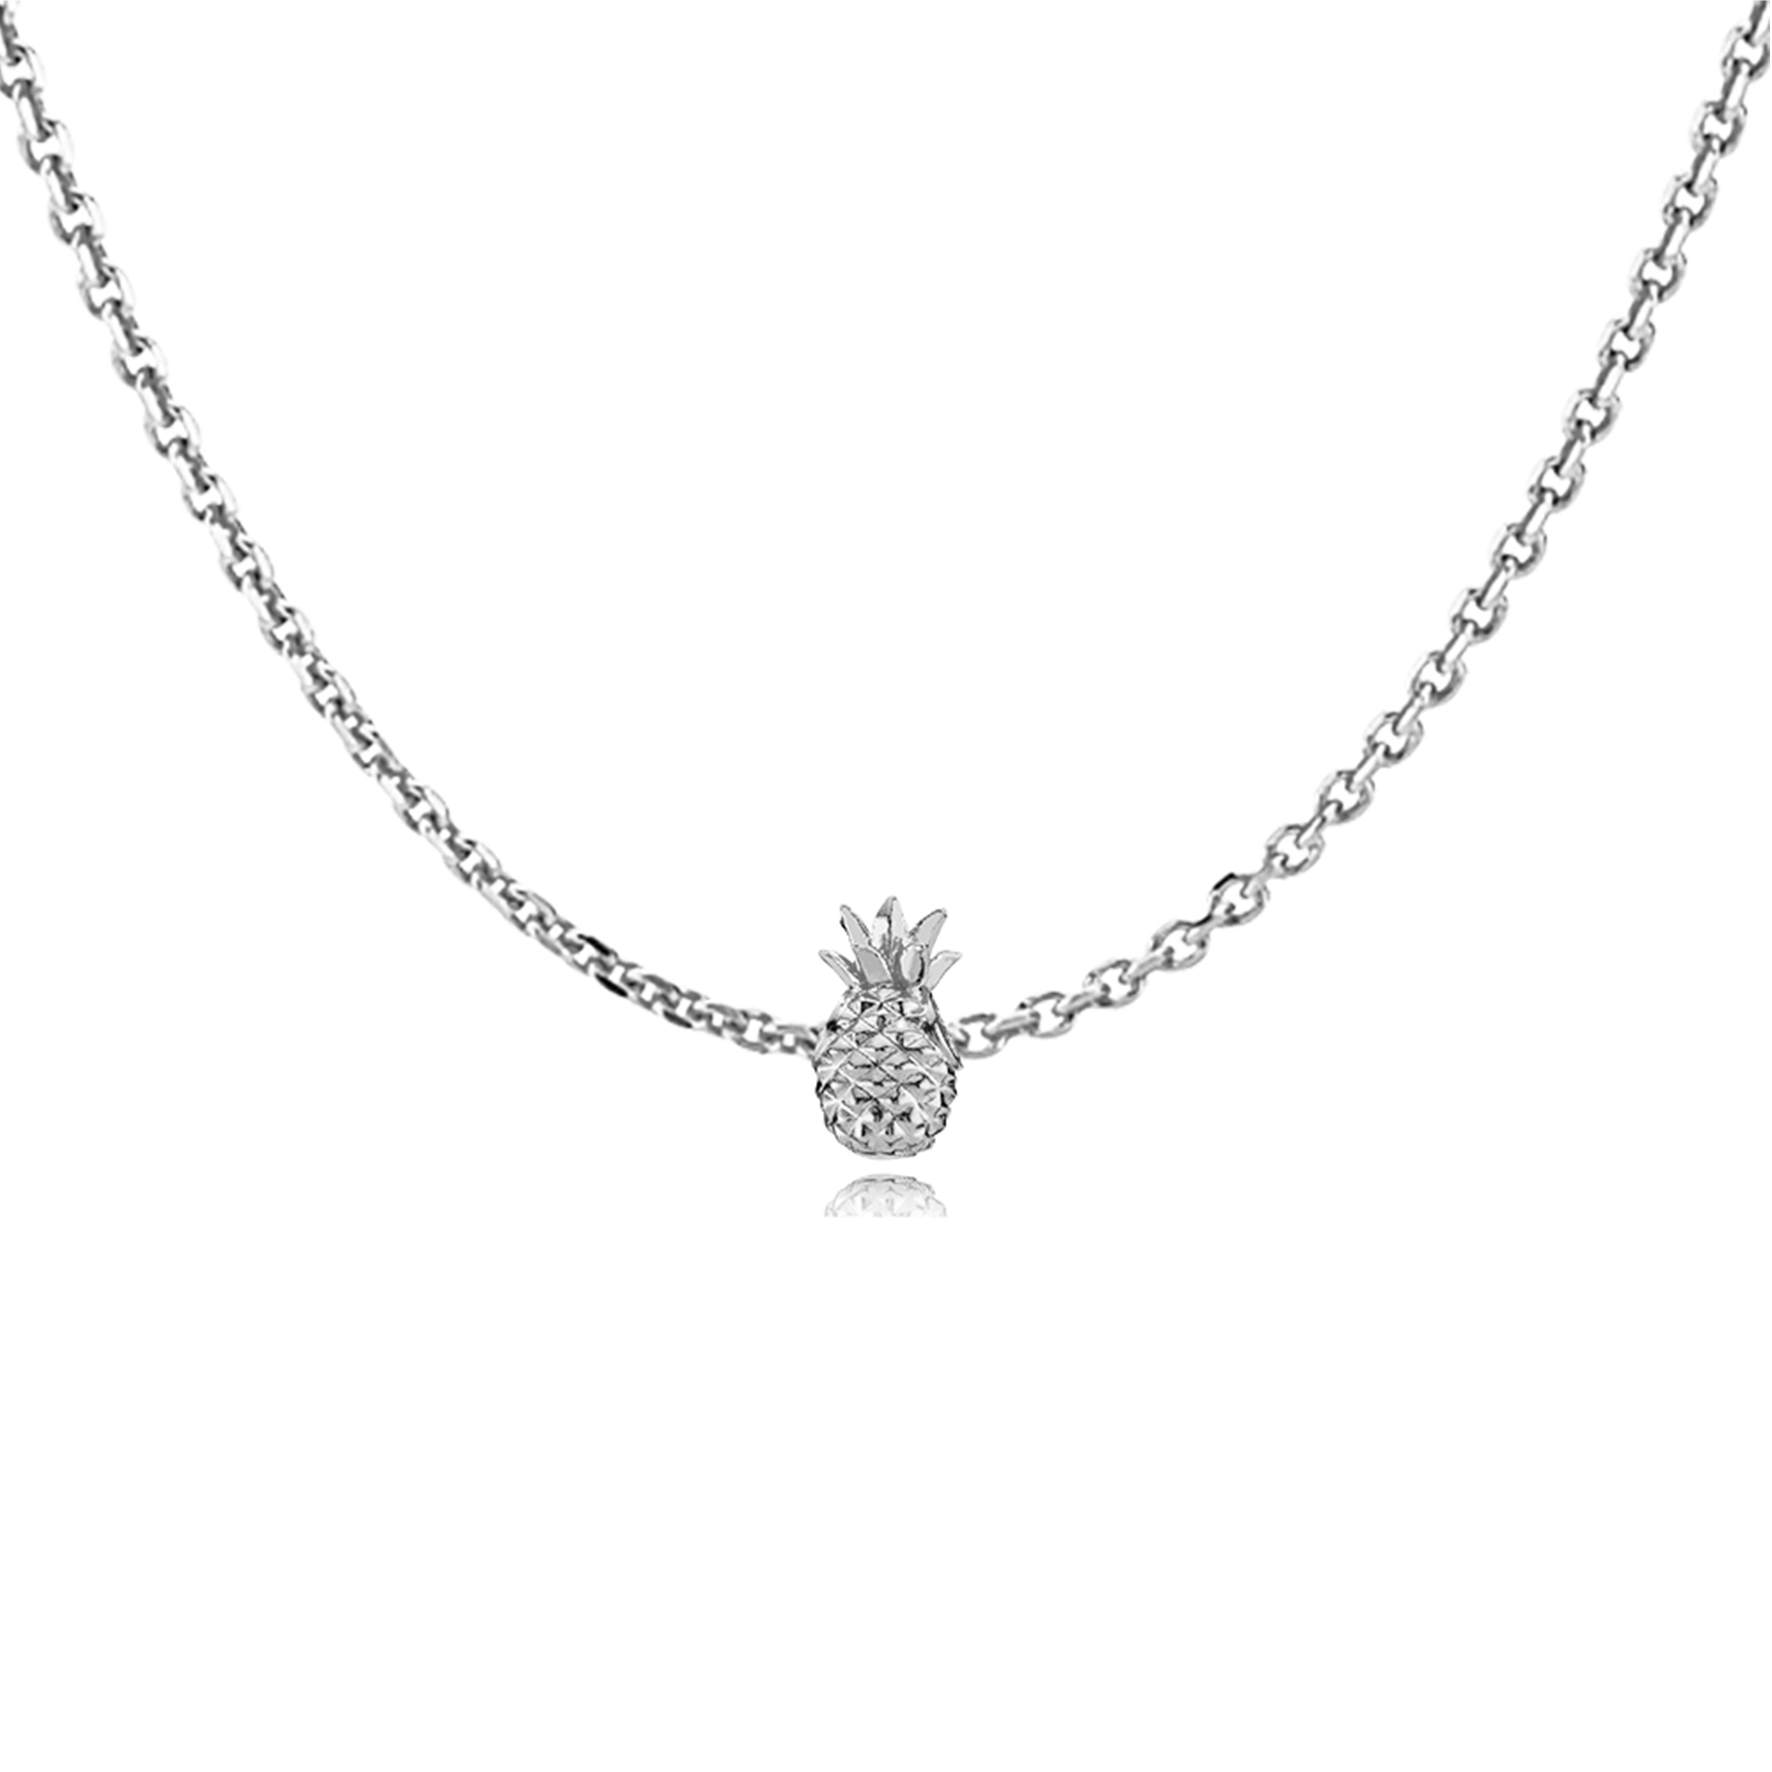 Anna by Sistie Pendant Necklace fra Sistie i Sølv Sterling 925